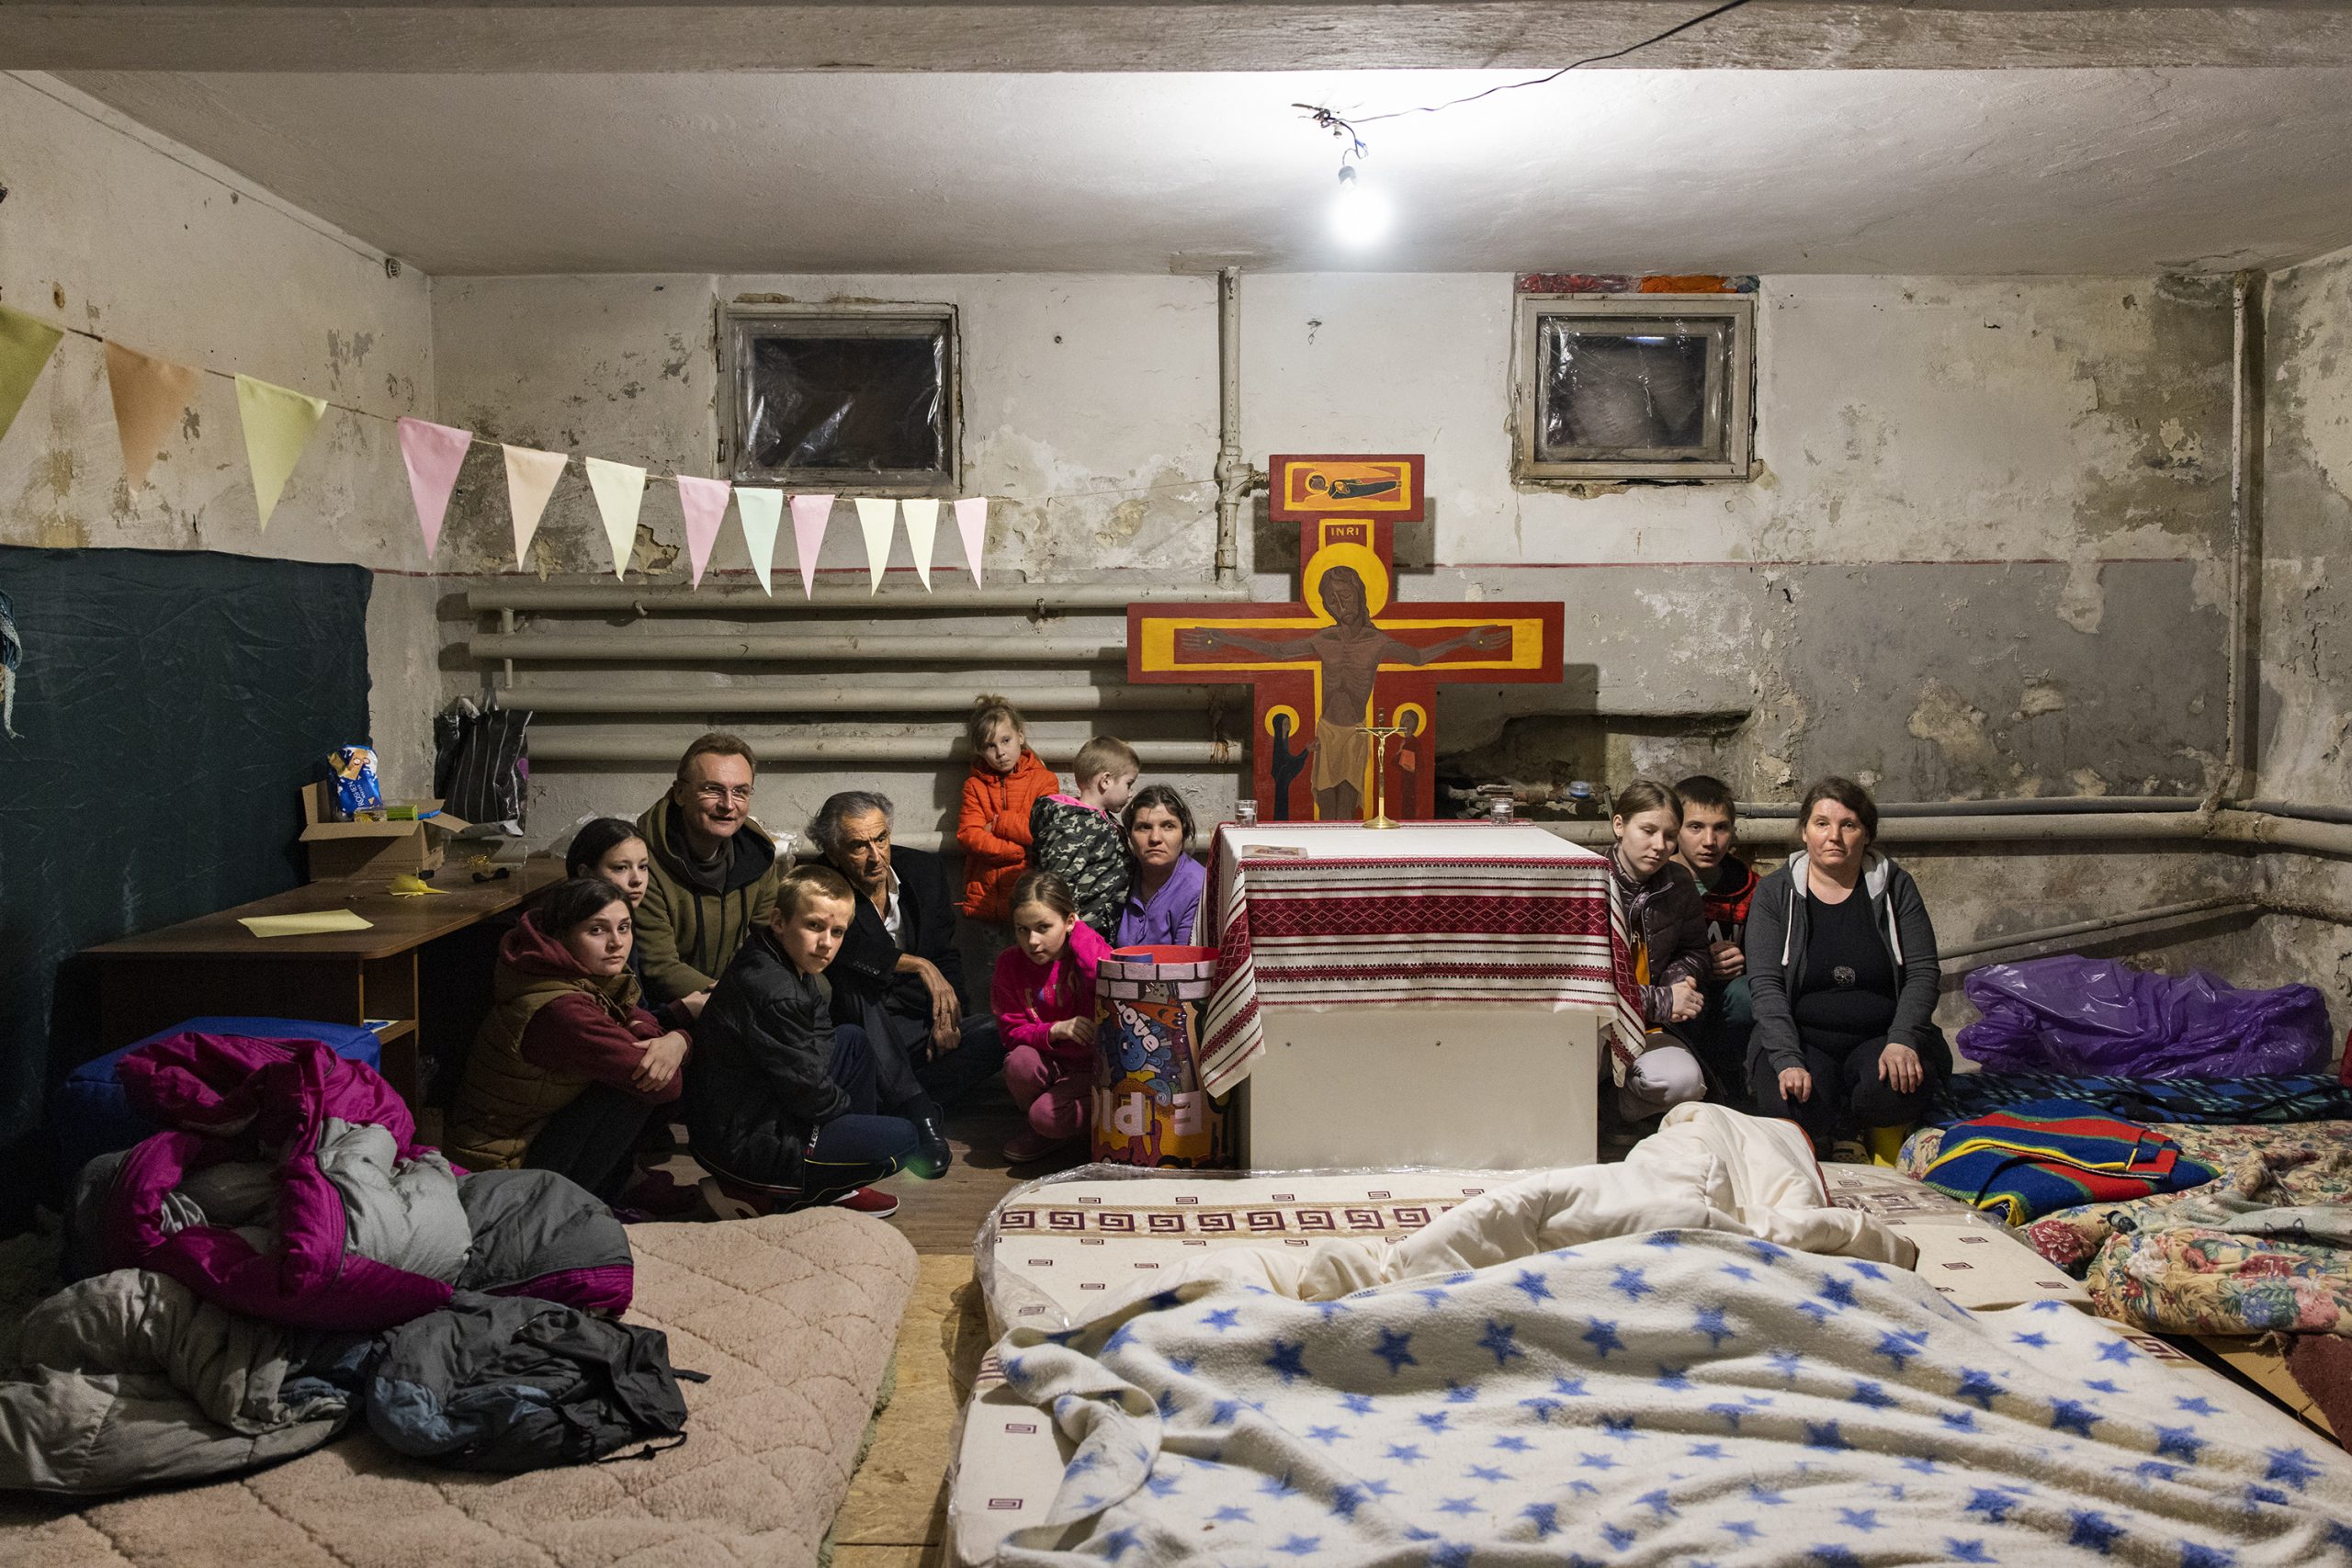 Bernard-Henri Lévy dans les sous-sols un monastère orthodoxe avec une famille. Il y a des matelas au sol, des icônes, une des individus, femmes, enfants et hommes accroupis.